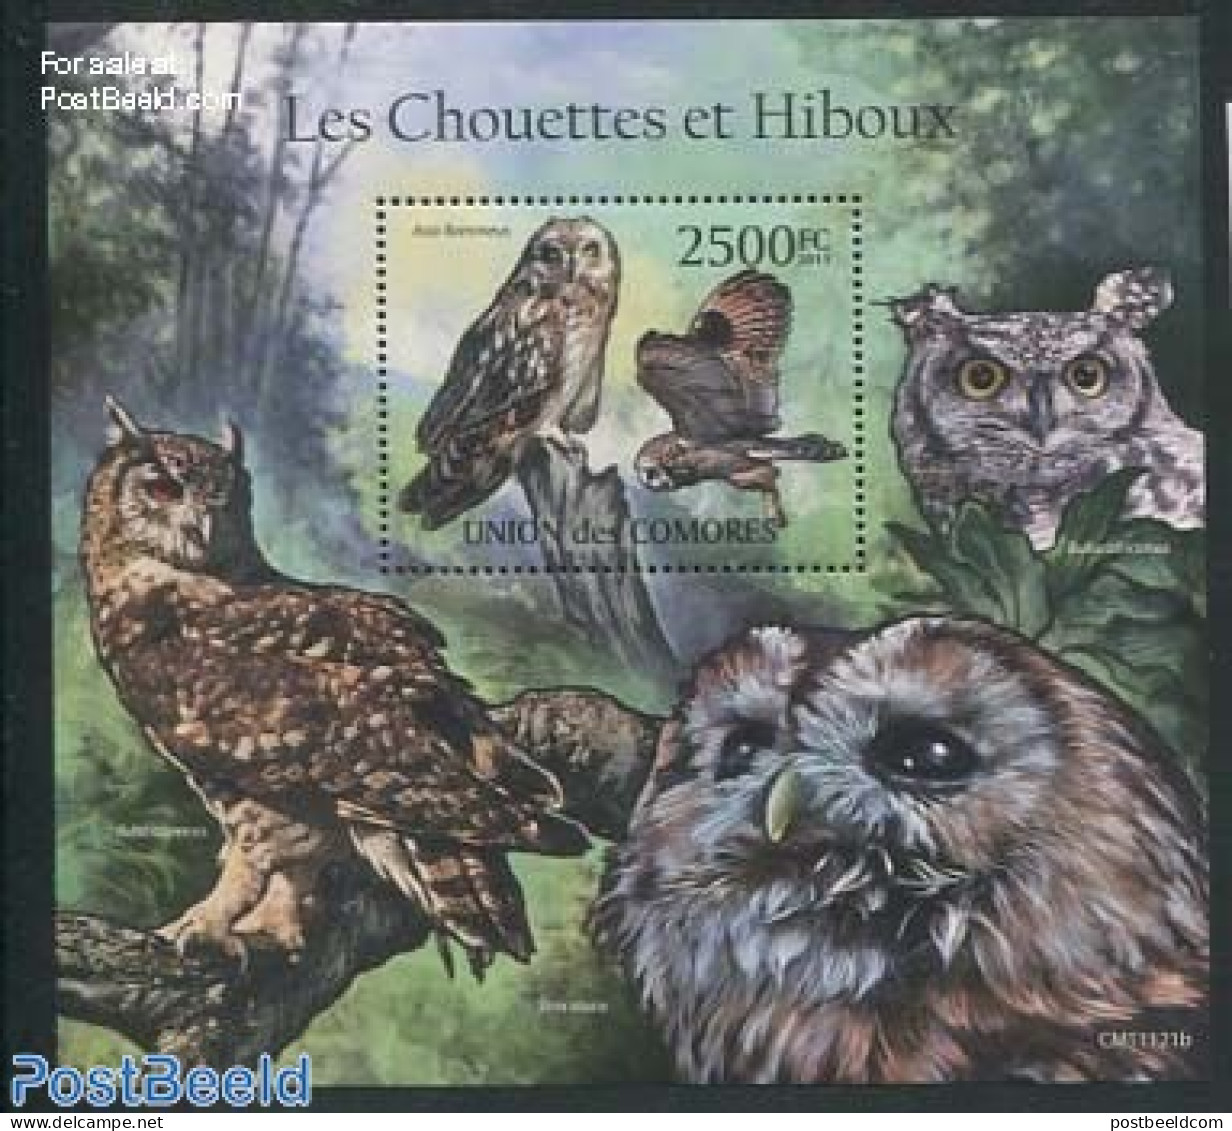 Comoros 2011 Owls S/s, Mint NH, Nature - Birds - Birds Of Prey - Owls - Comores (1975-...)